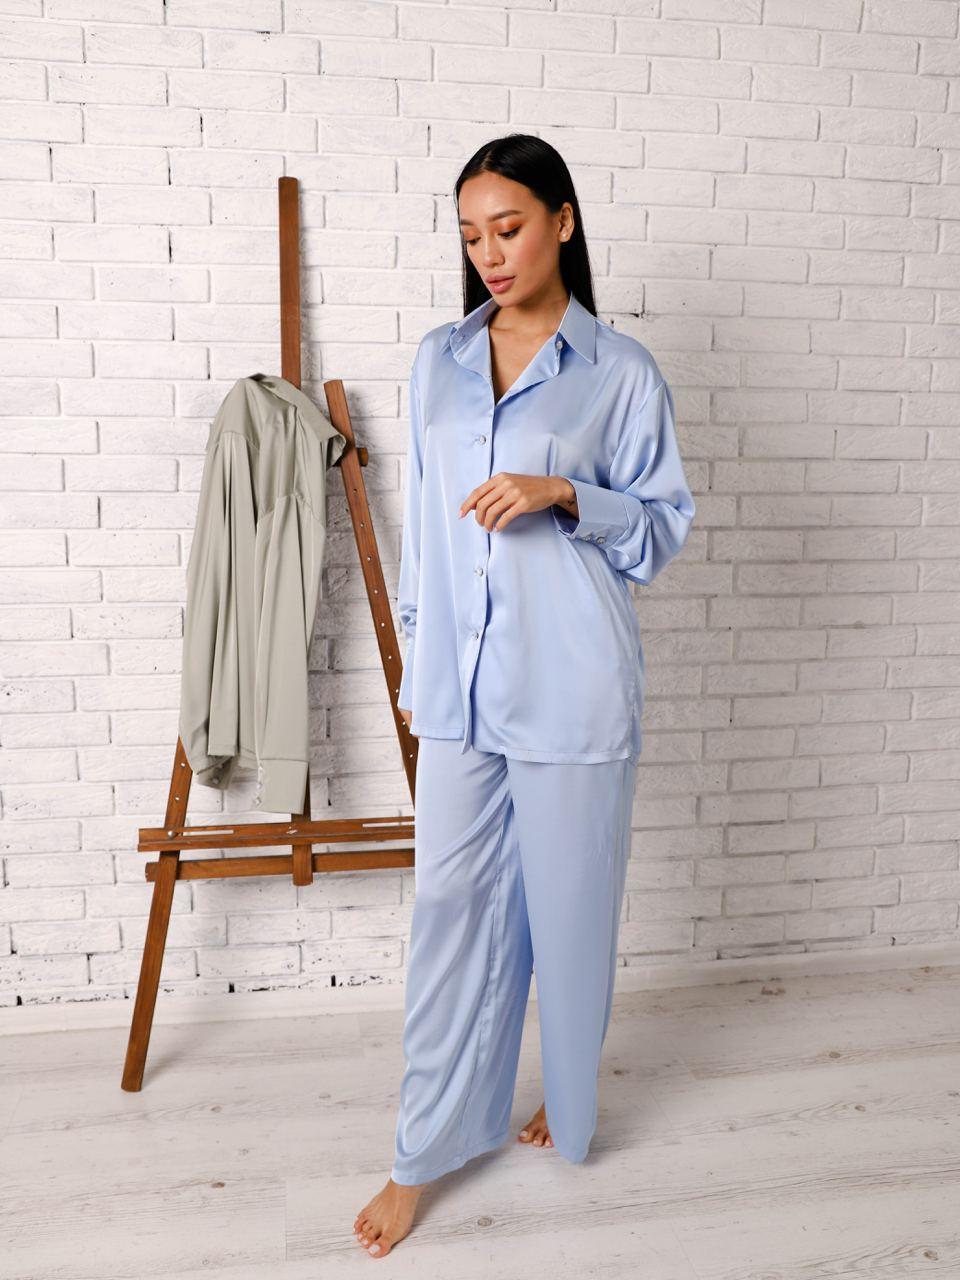 Женская шелковая пижама рубашка и штаны 2 в 1 пижама и костюм для дома  голубая размер 42-46, цена 855 грн., купить Івано-Франківськ — Prom.ua  (ID#1439032949)